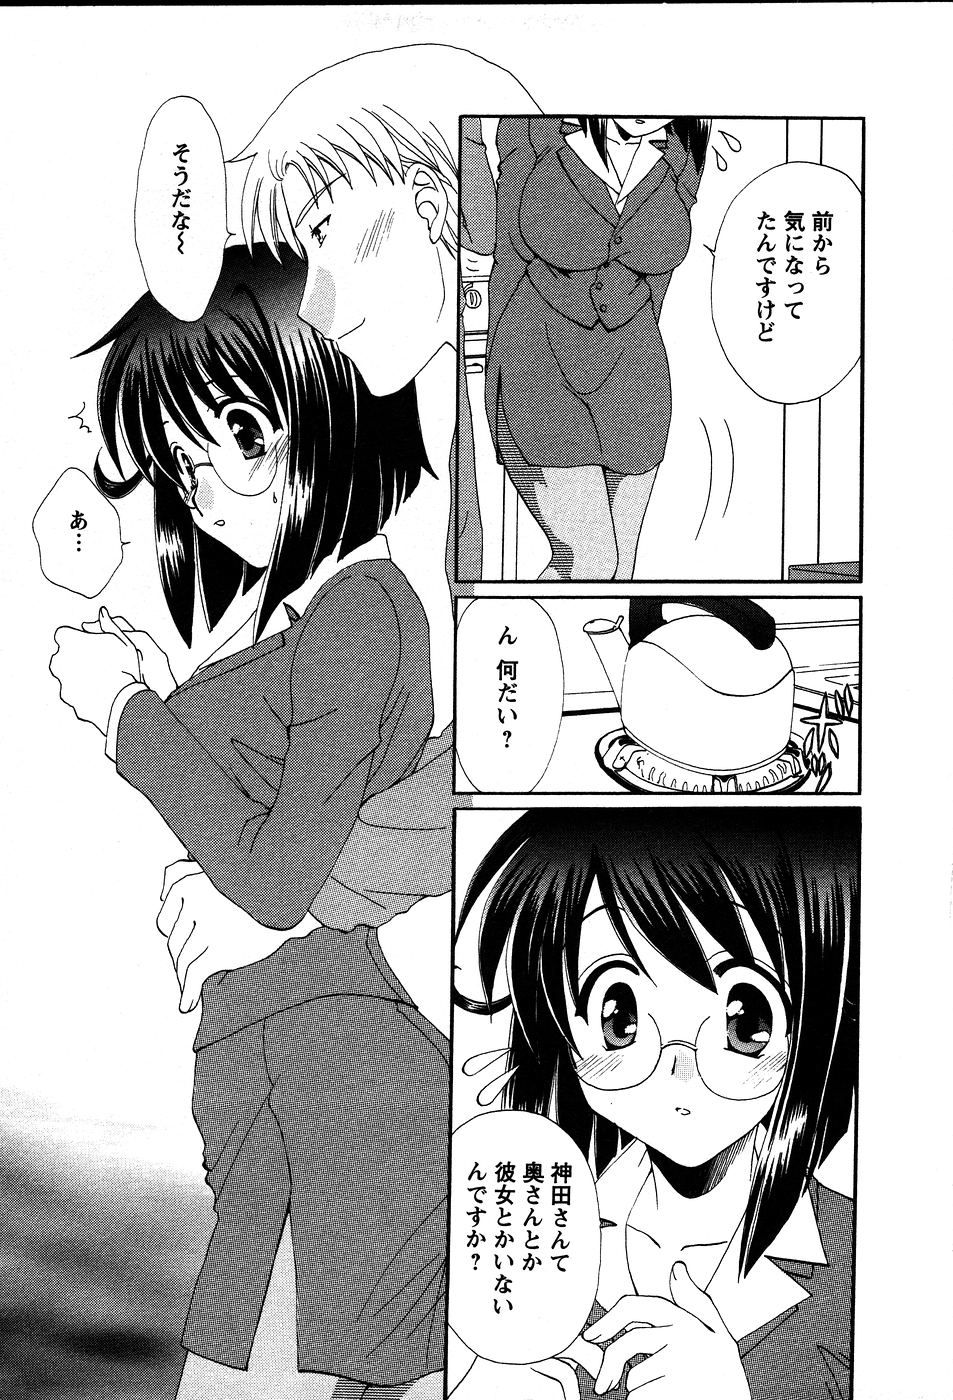 [Kurokawa Mio] Usagi no Hanayome - Rabbit Bride 37